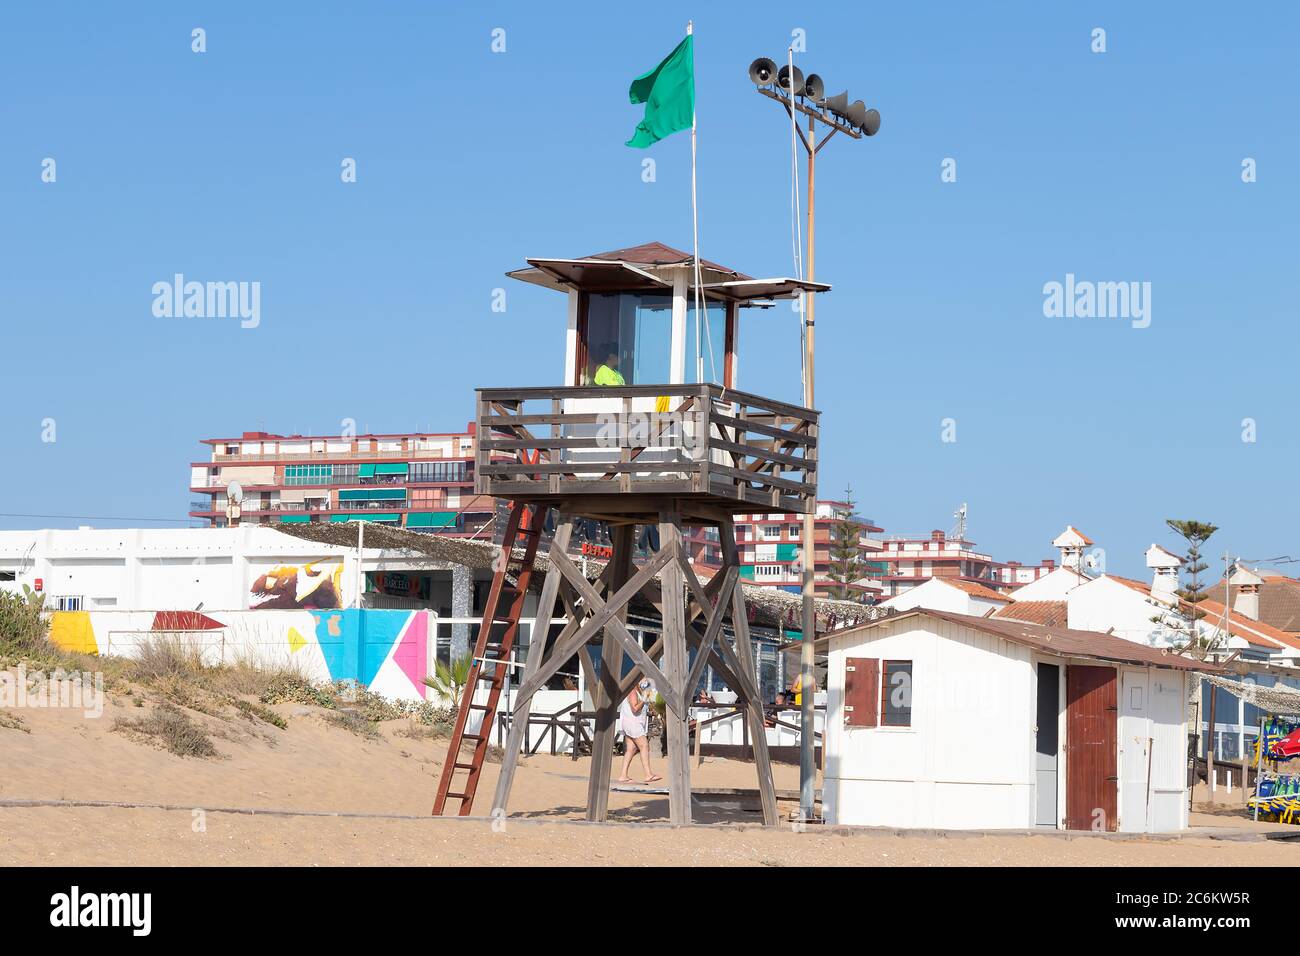 Punta Umbria, Huelva, Spanien - 9. Juli 2020: Ein Rettungsschwimmer sitzt auf einem Überwachungsturm am Strand von Punta Umbria, Huelva, Spanien Stockfoto